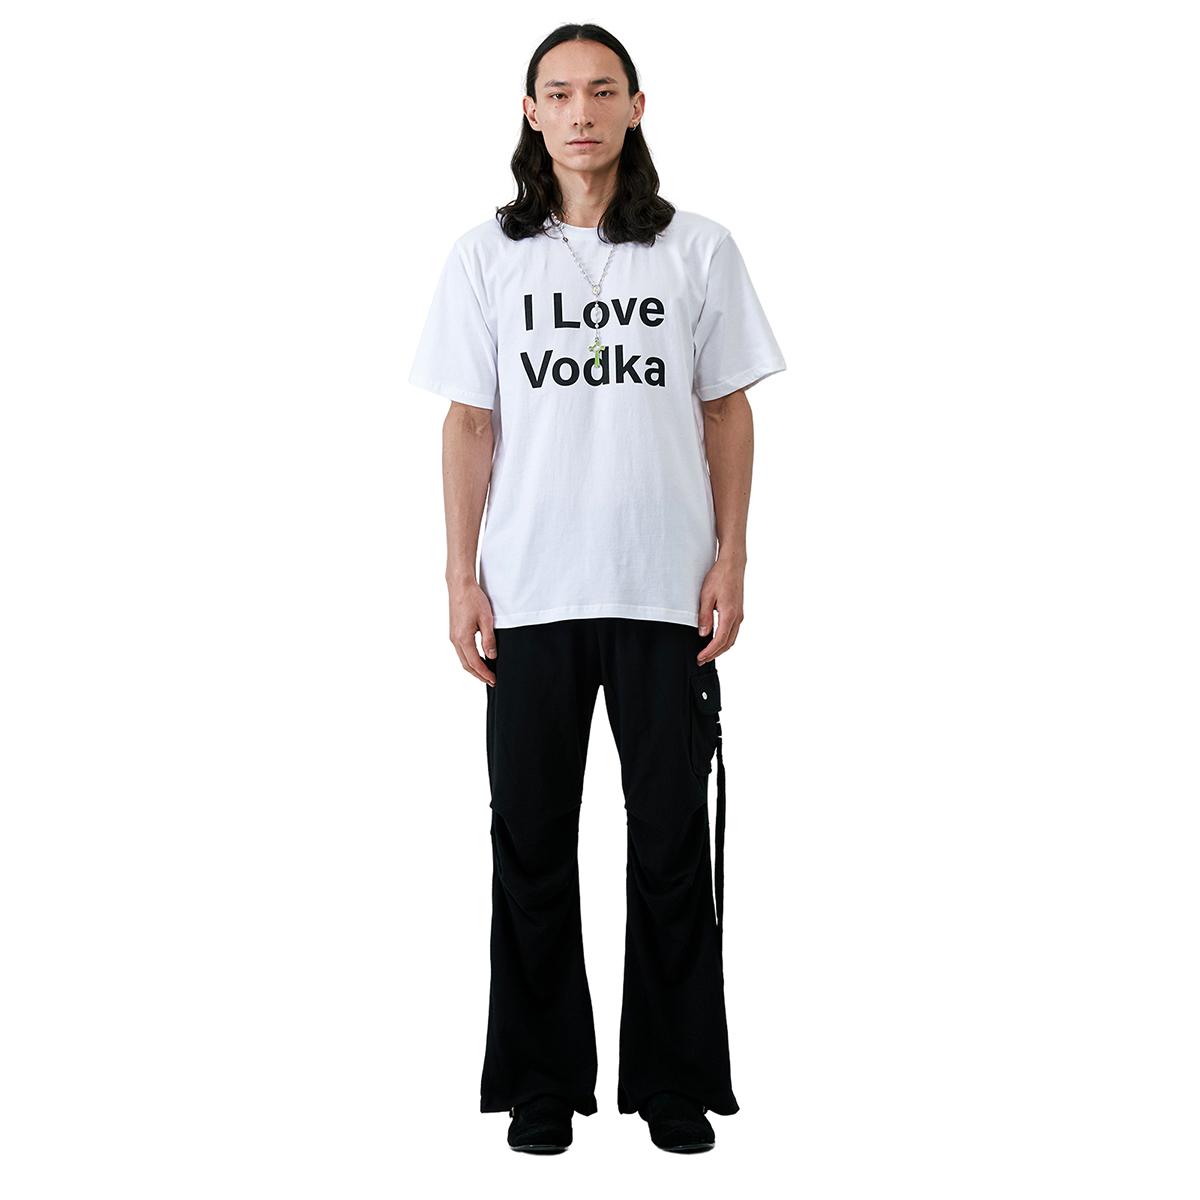 I Love Vodka T-shirt (White)